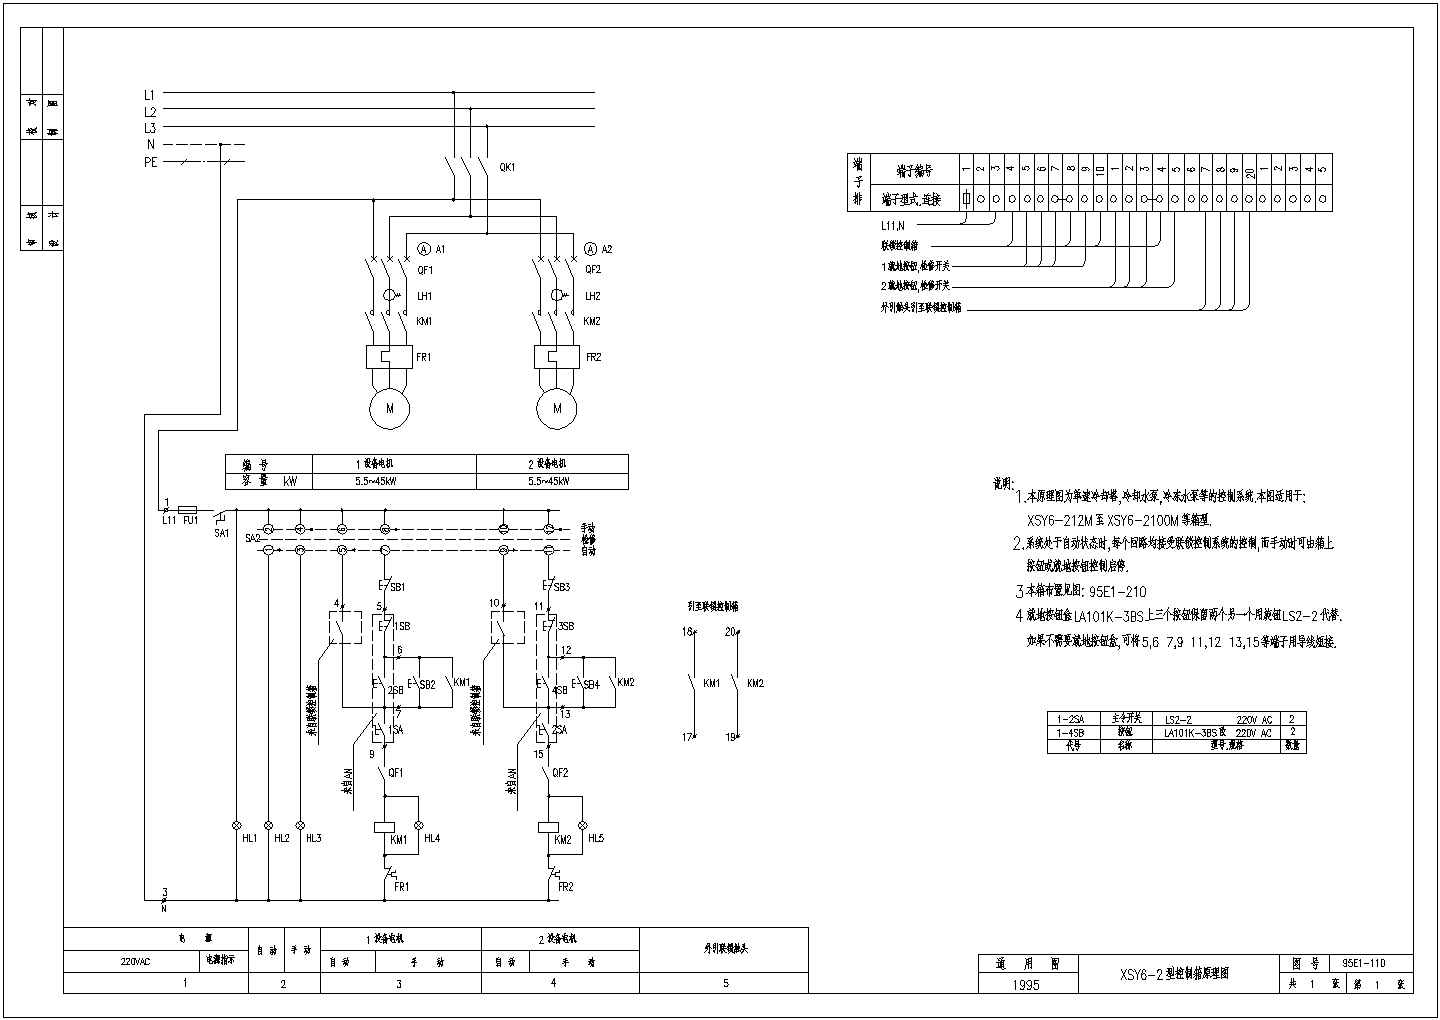 【北京市】某单位研发XSY6-2型控制箱原理图